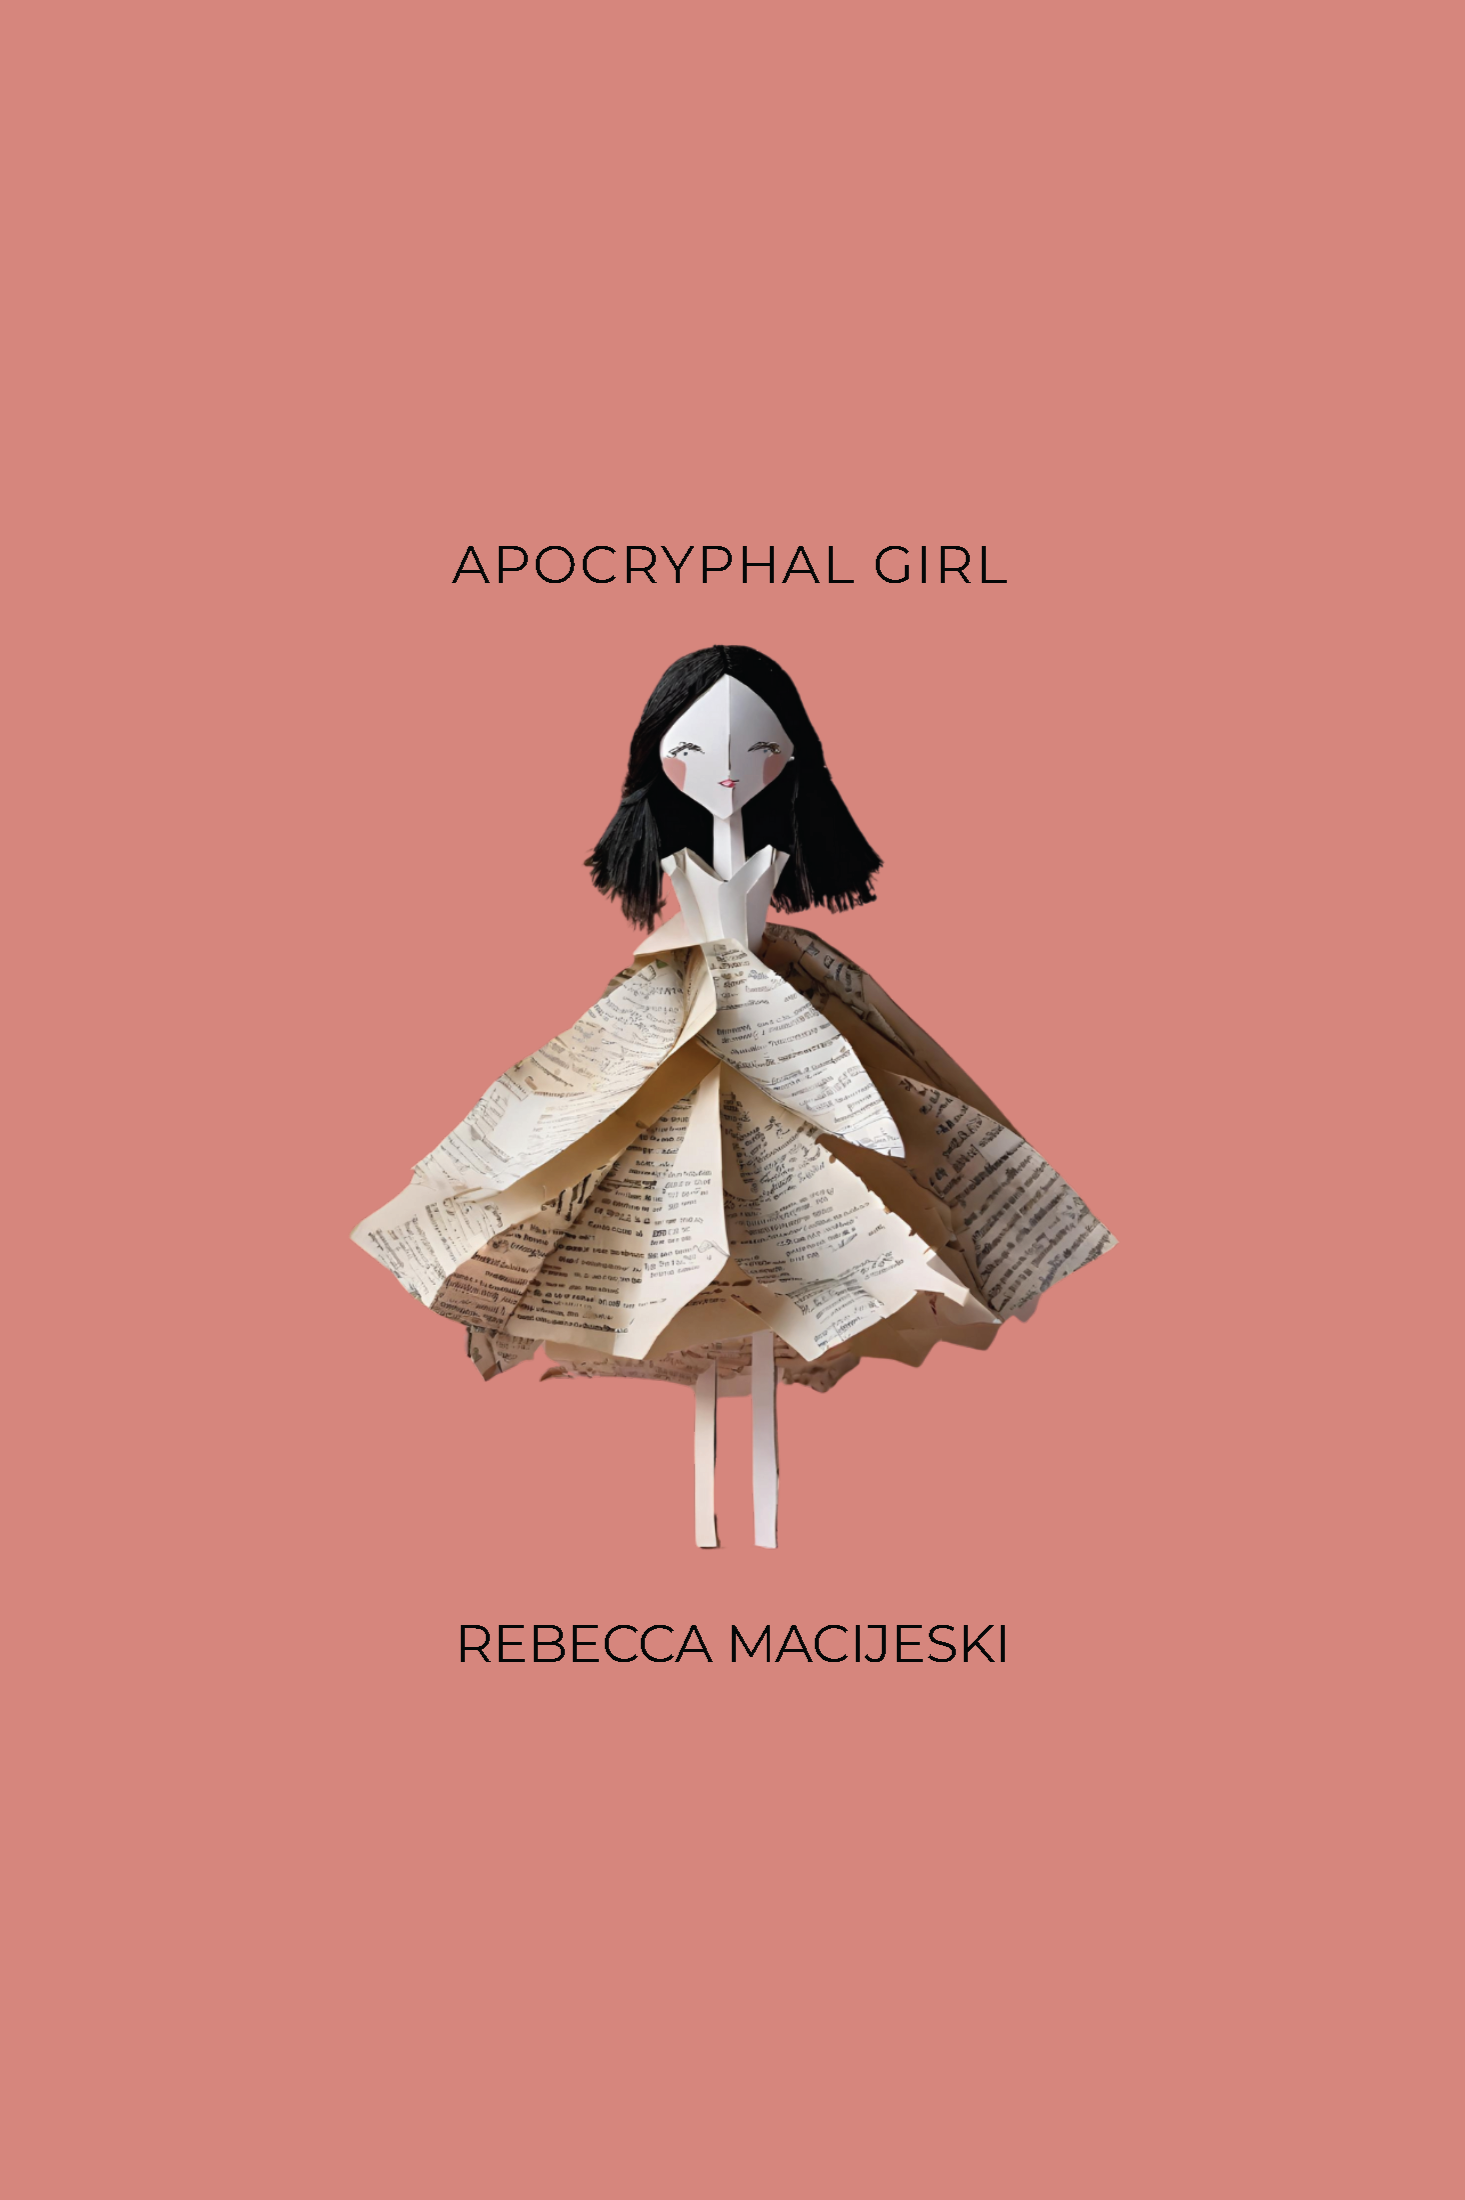 Book cover of Apocryphal Girl by Rebecca Macijeski